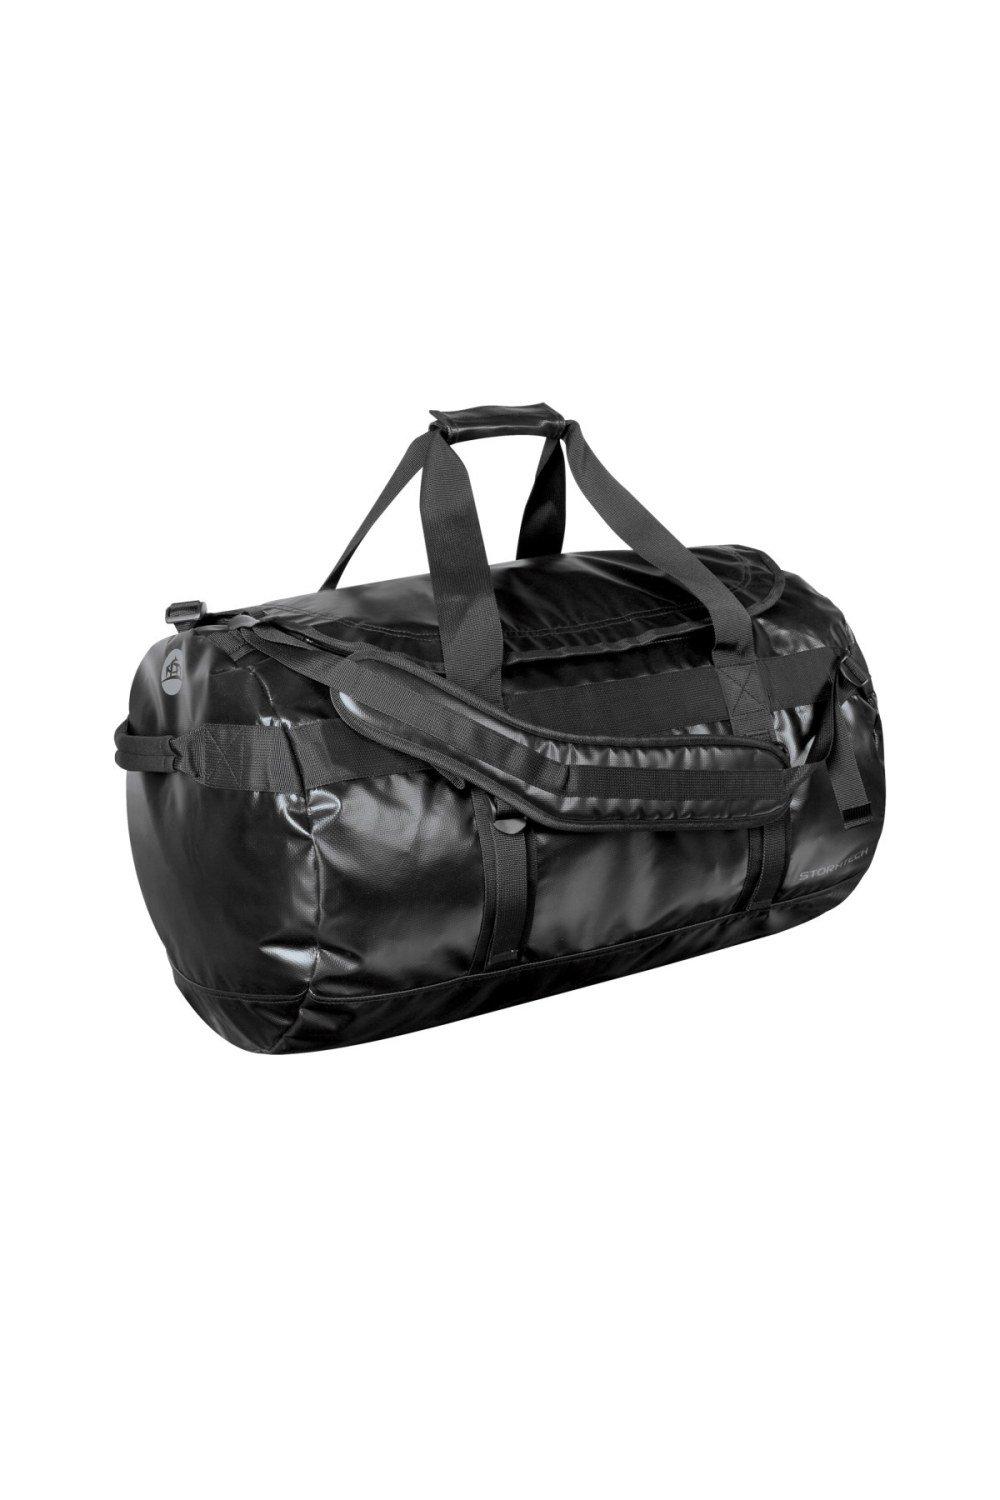 Waterproof Gear Holdall Bag (Large)